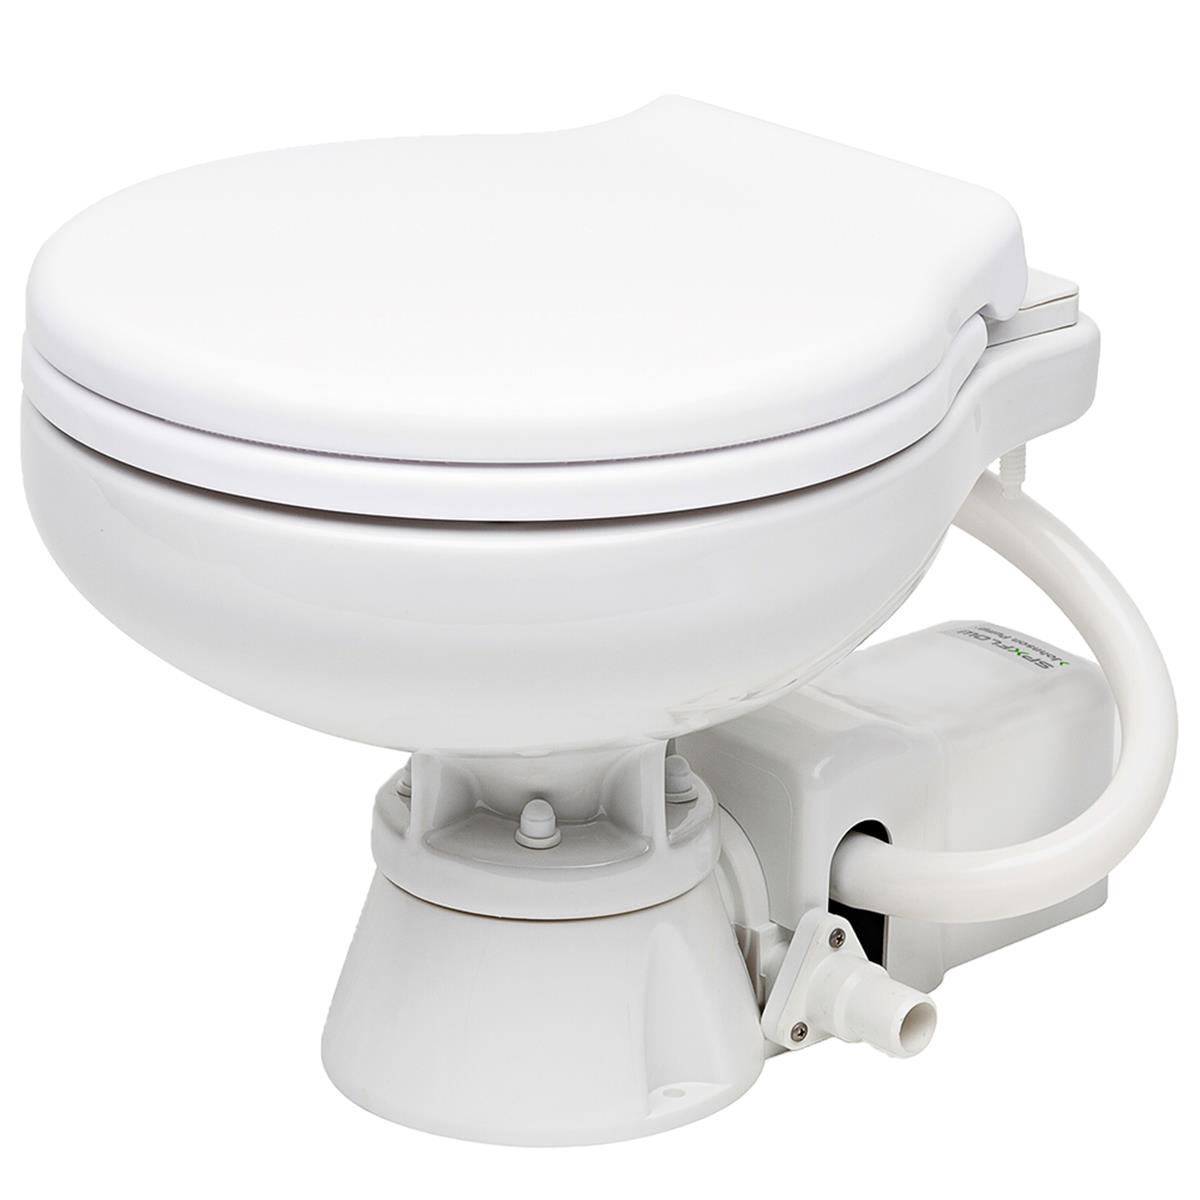 80-47626-01 Aquat Electric Marine Toilet With Super Compact - 12v